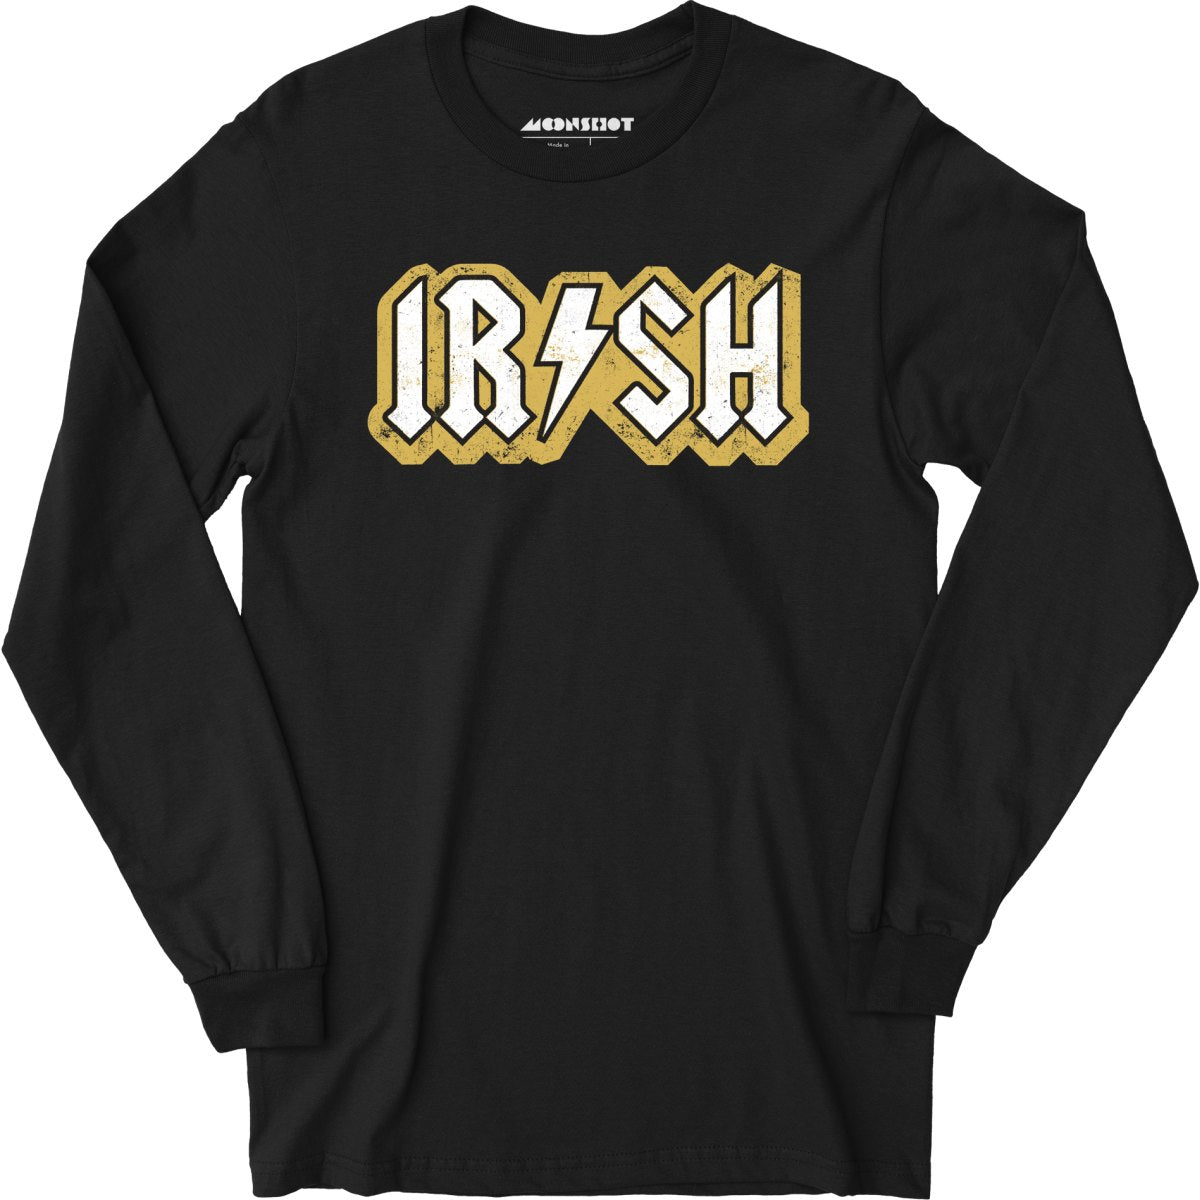 Irish - Long Sleeve T-Shirt